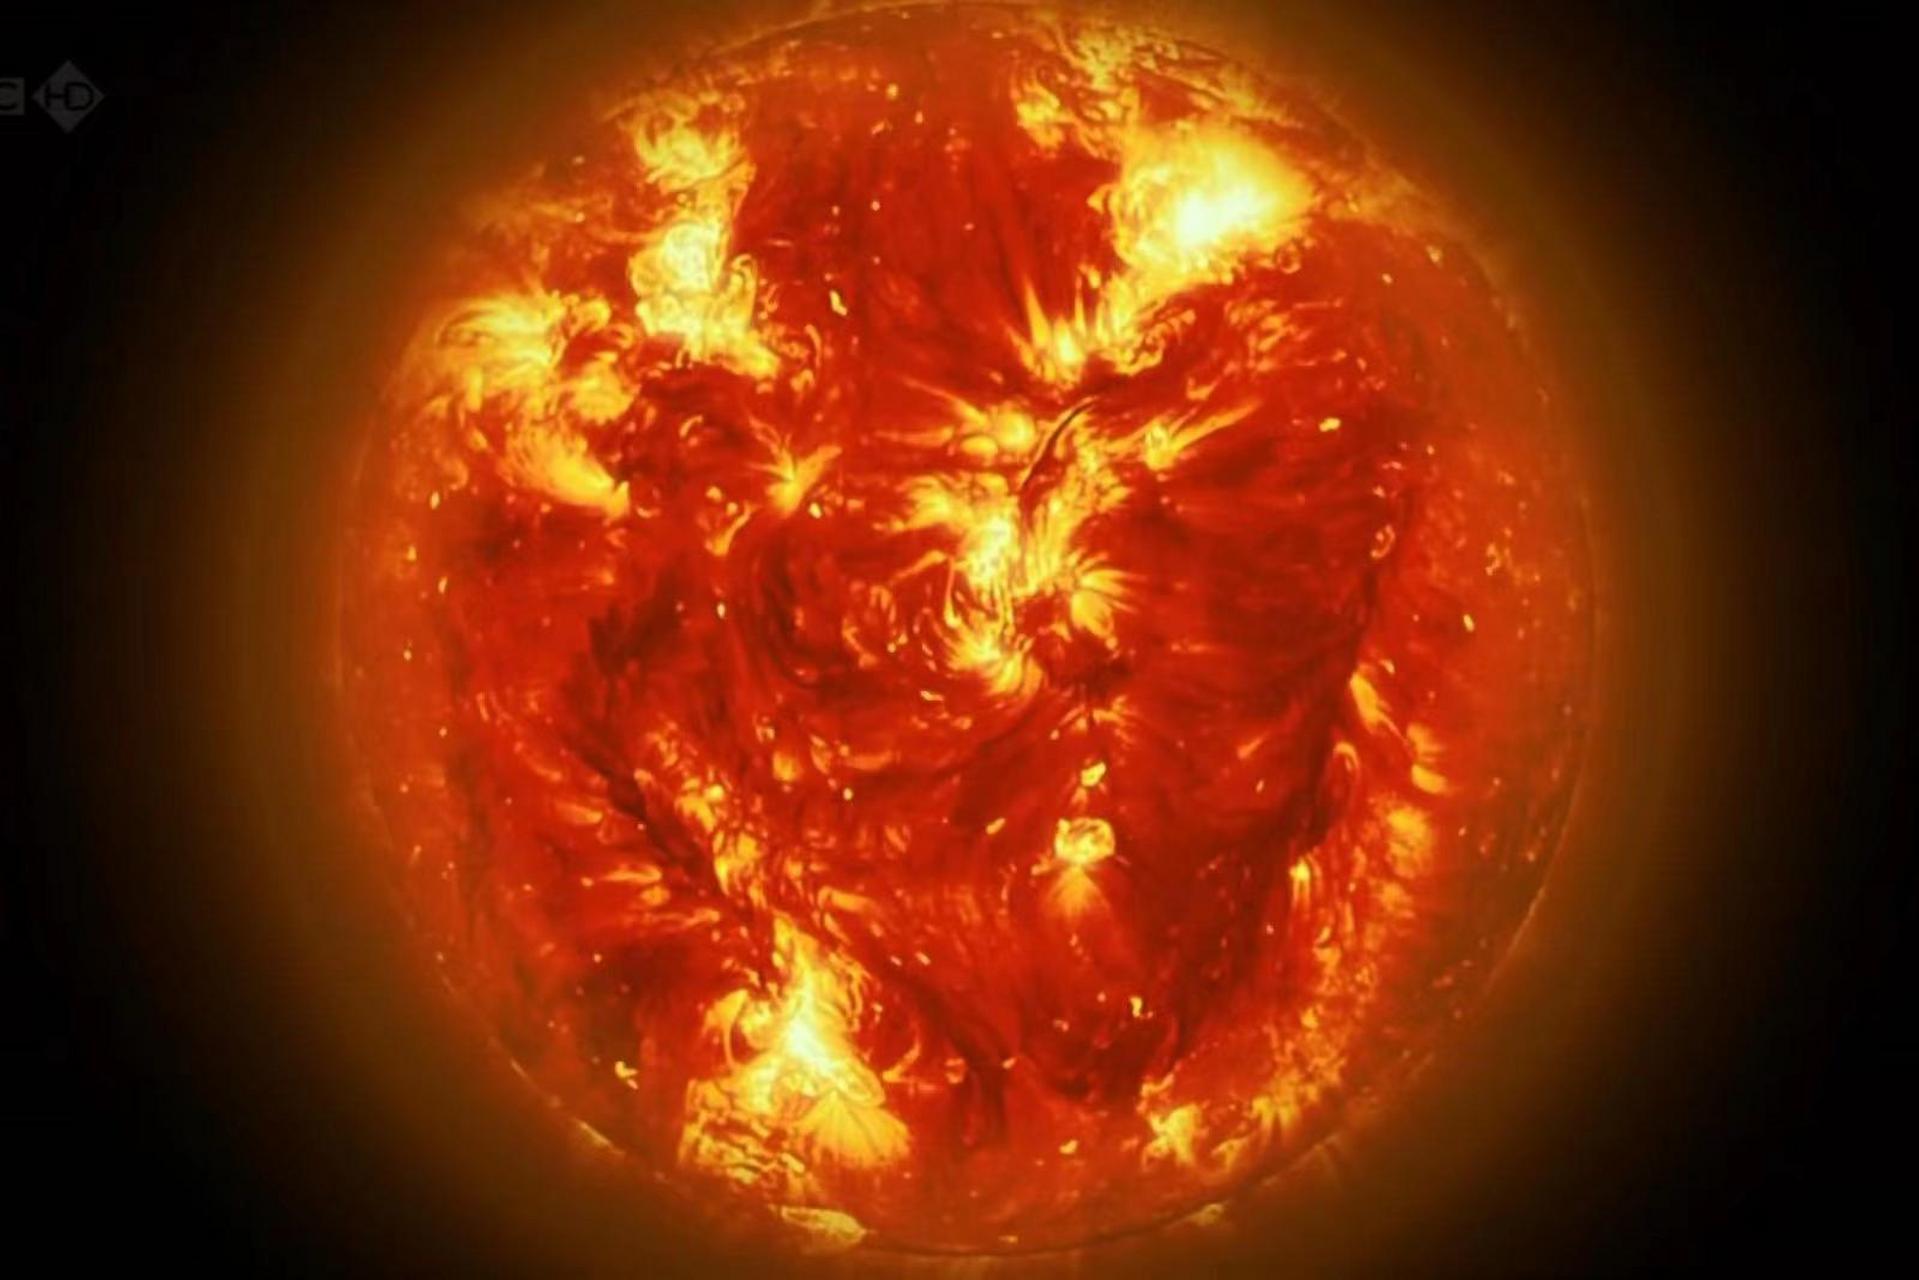 太阳膨胀成红巨星图片